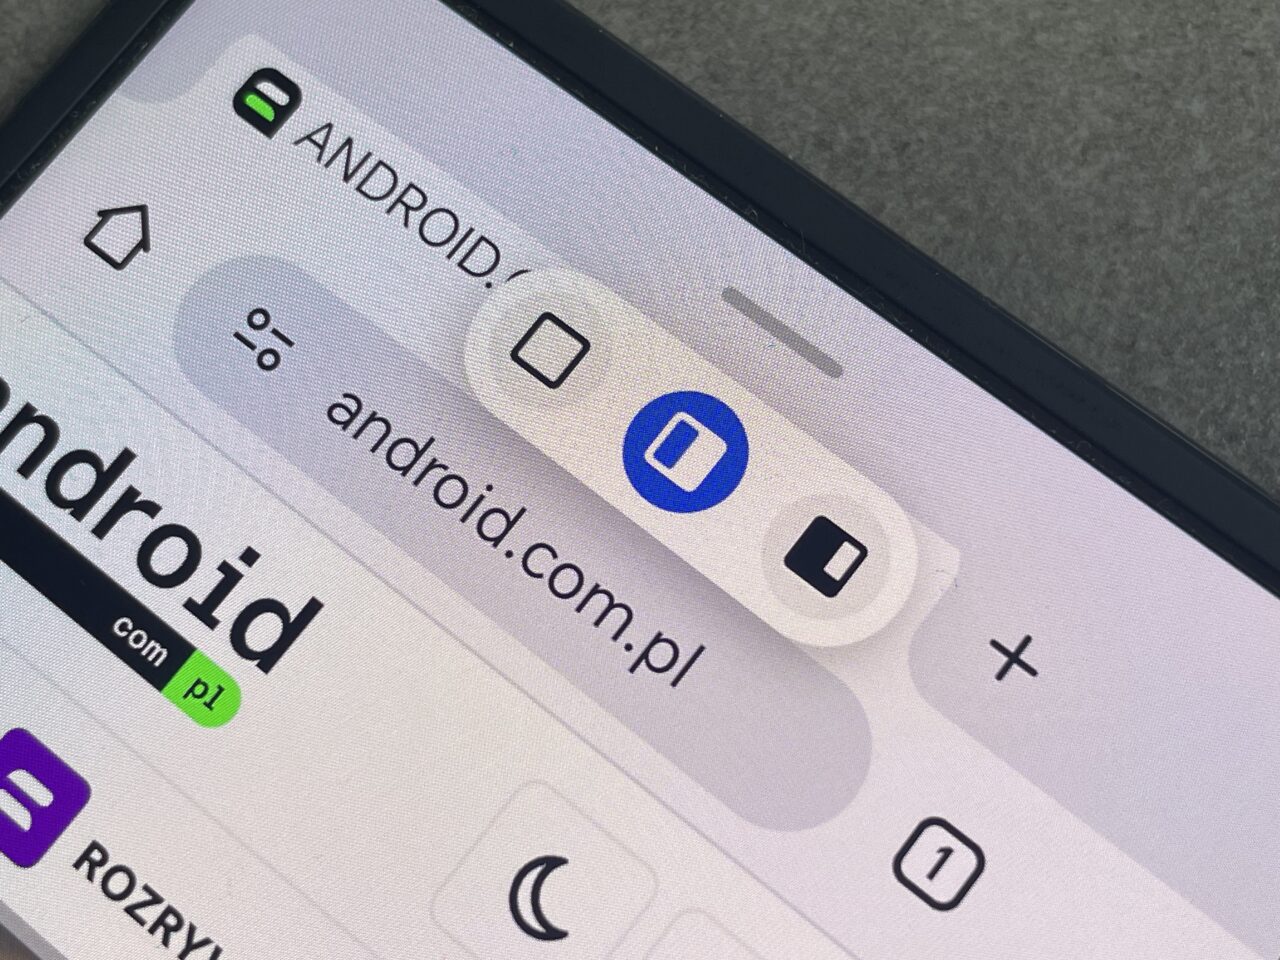 Zbliżenie na ekran smartfona z otwartą przeglądarką internetową pokazującą pasek adresu z adresem "android.com.pl" i kilka ikon interfejsu użytkownika.